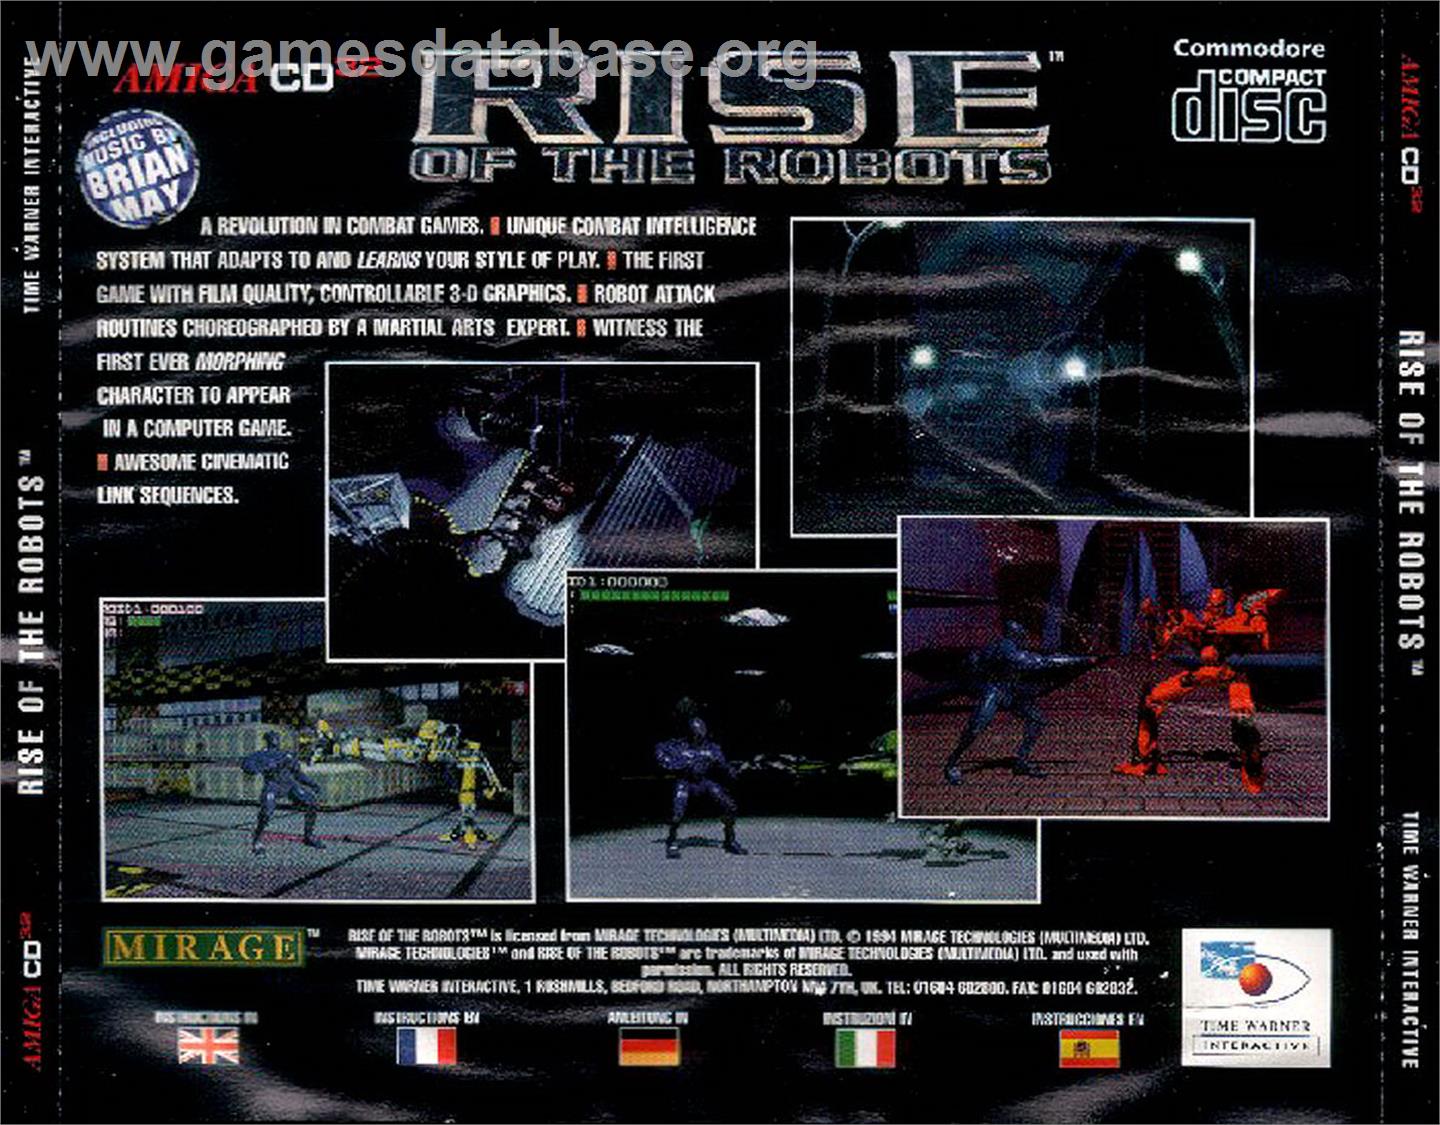 Rise of the Robots - Commodore Amiga CD32 - Artwork - Box Back